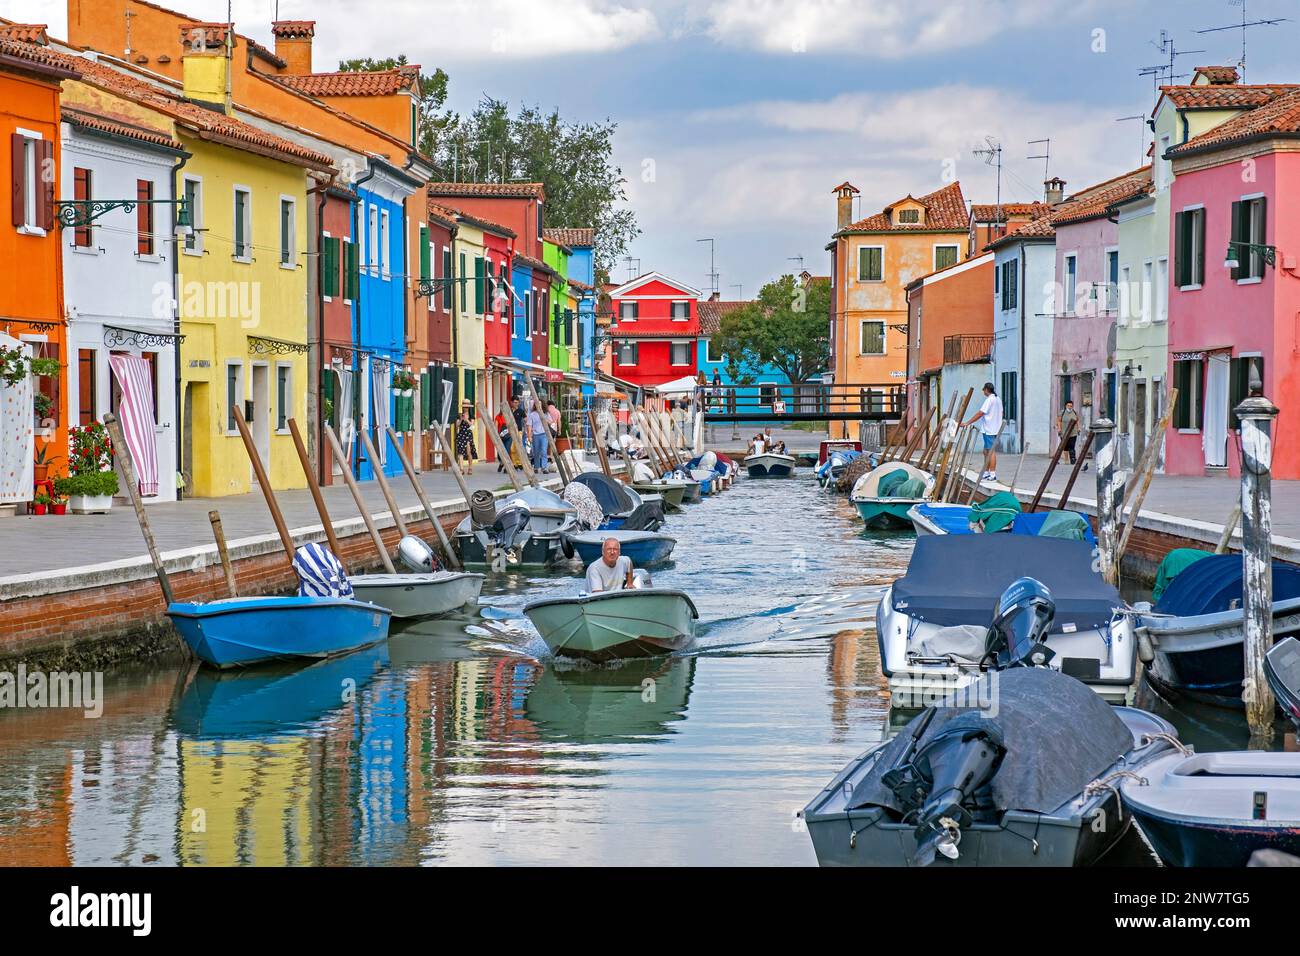 Case dai colori vivaci lungo il canale di Burano, isola nella laguna veneta vicino a Venezia, Veneto, Italia settentrionale Foto Stock